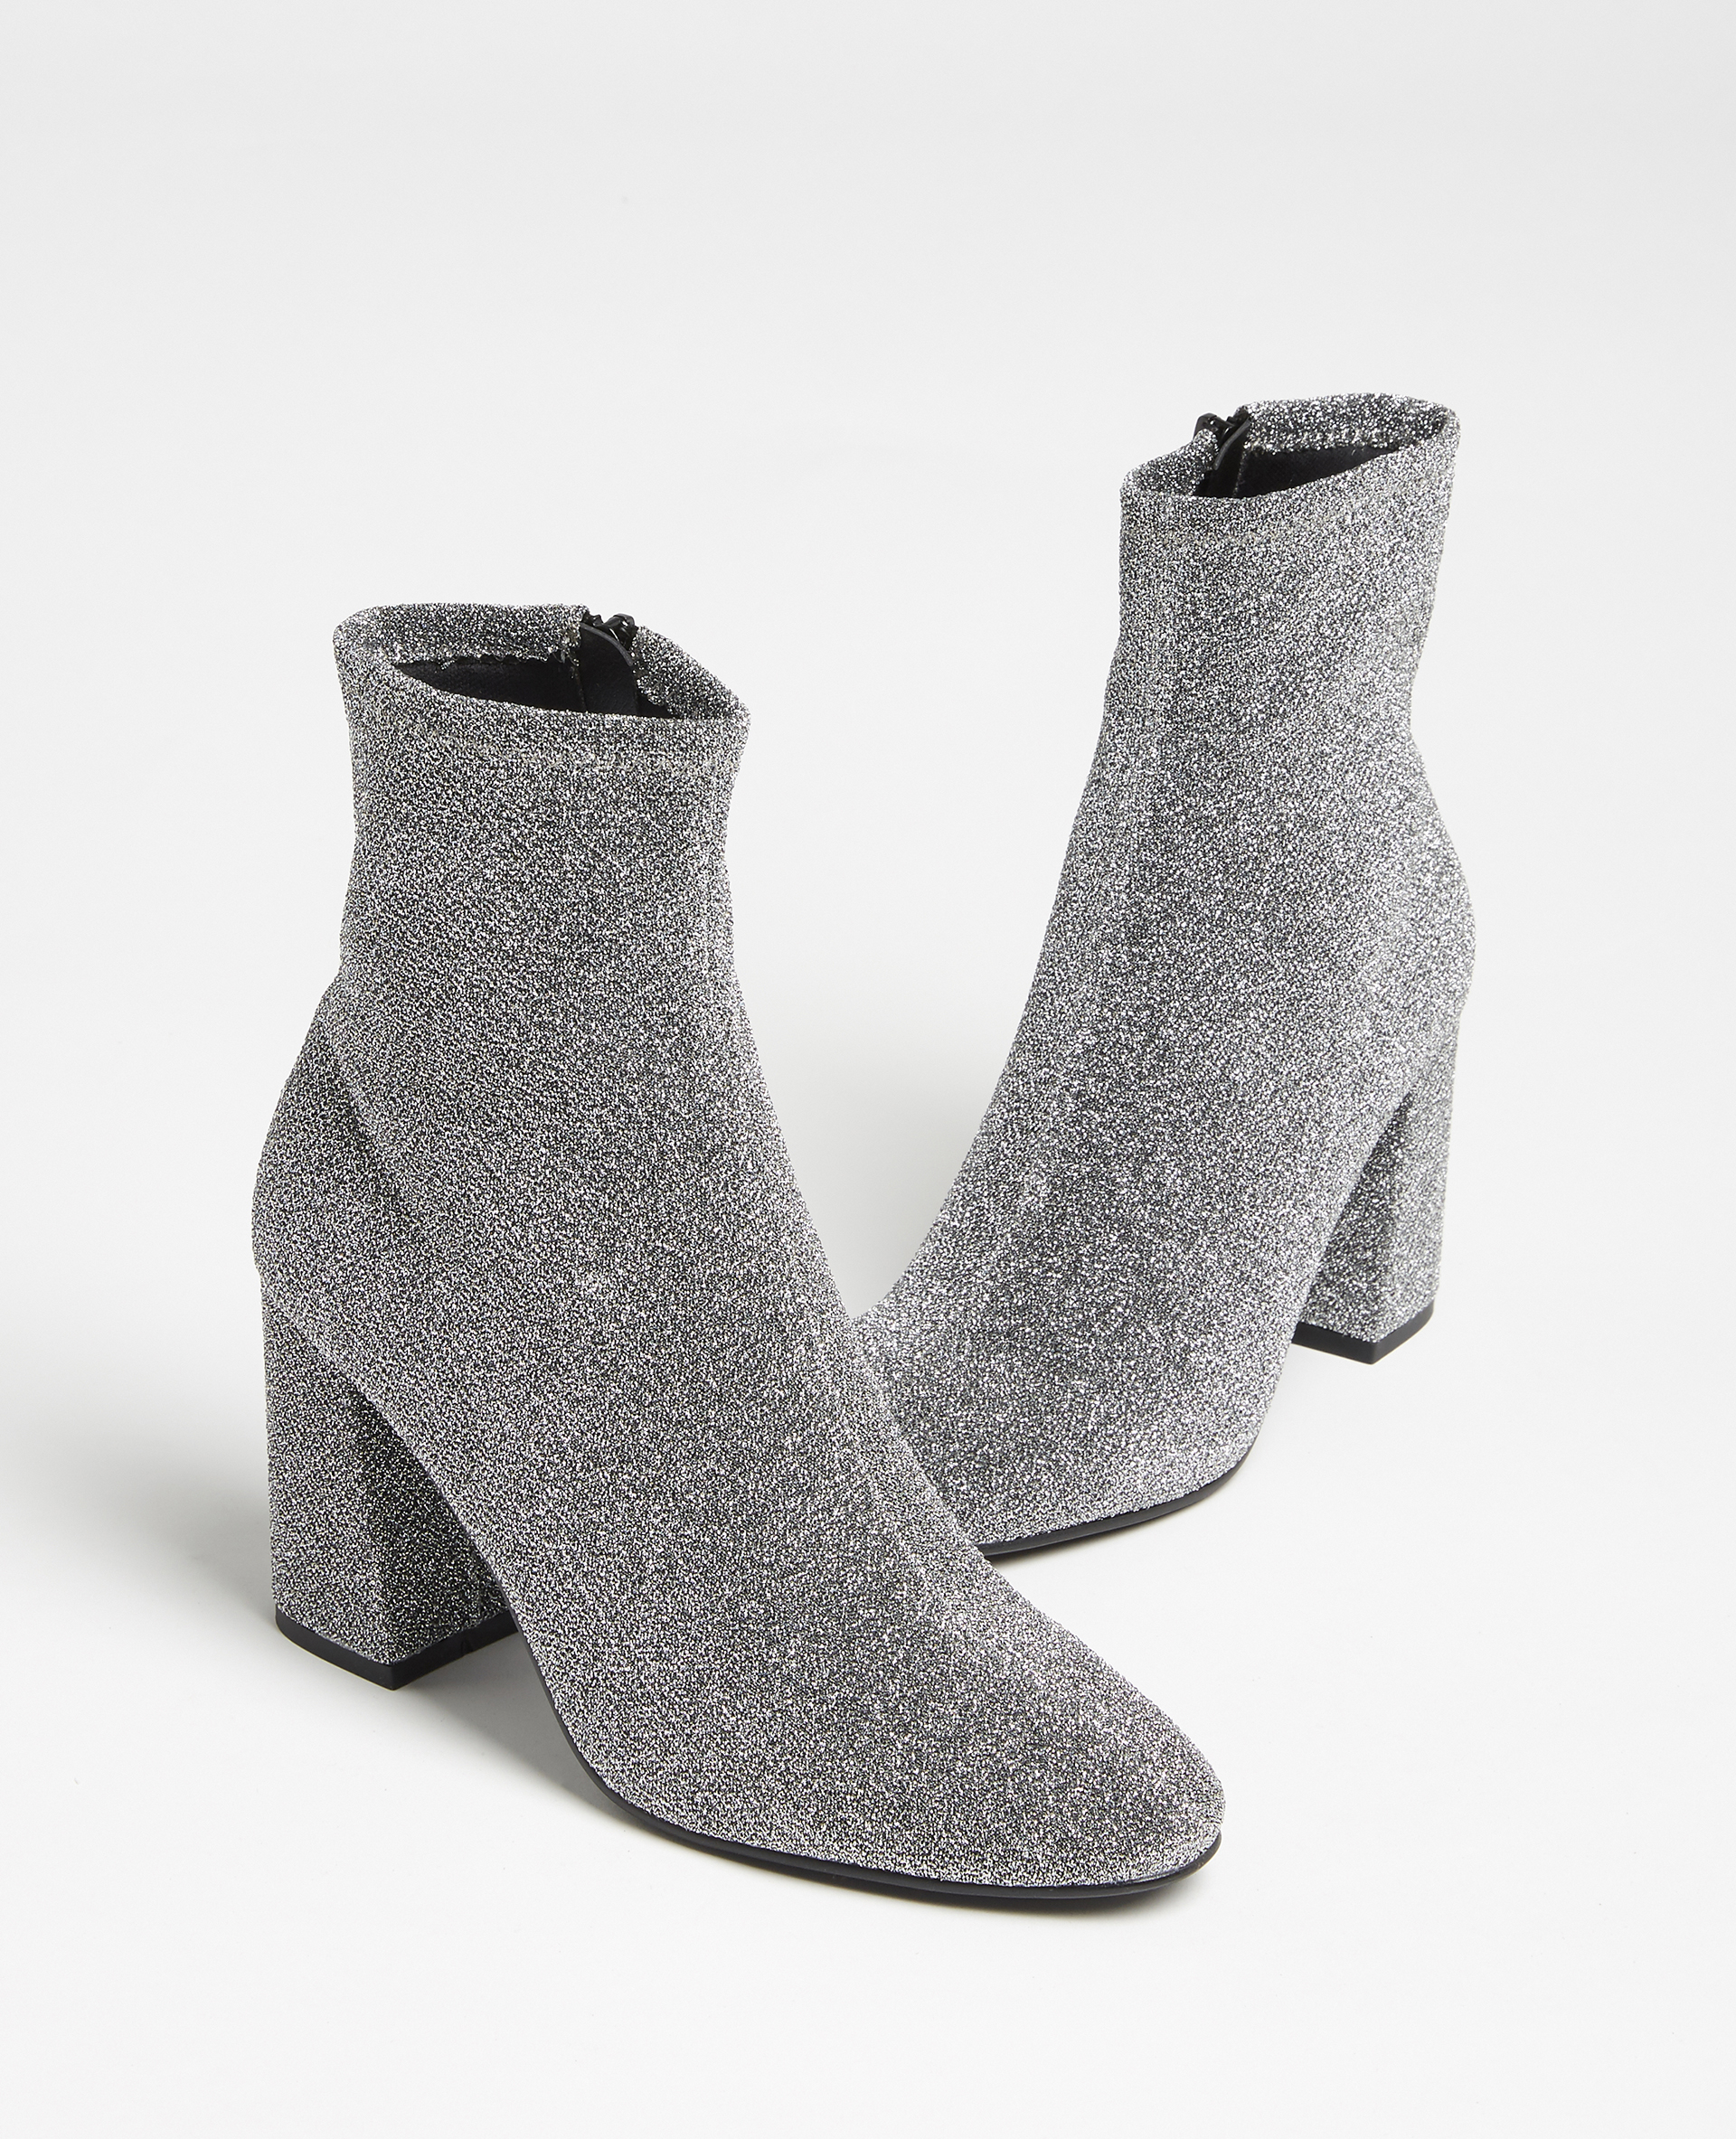 Boots en microfibre gris argenté - Pimkie